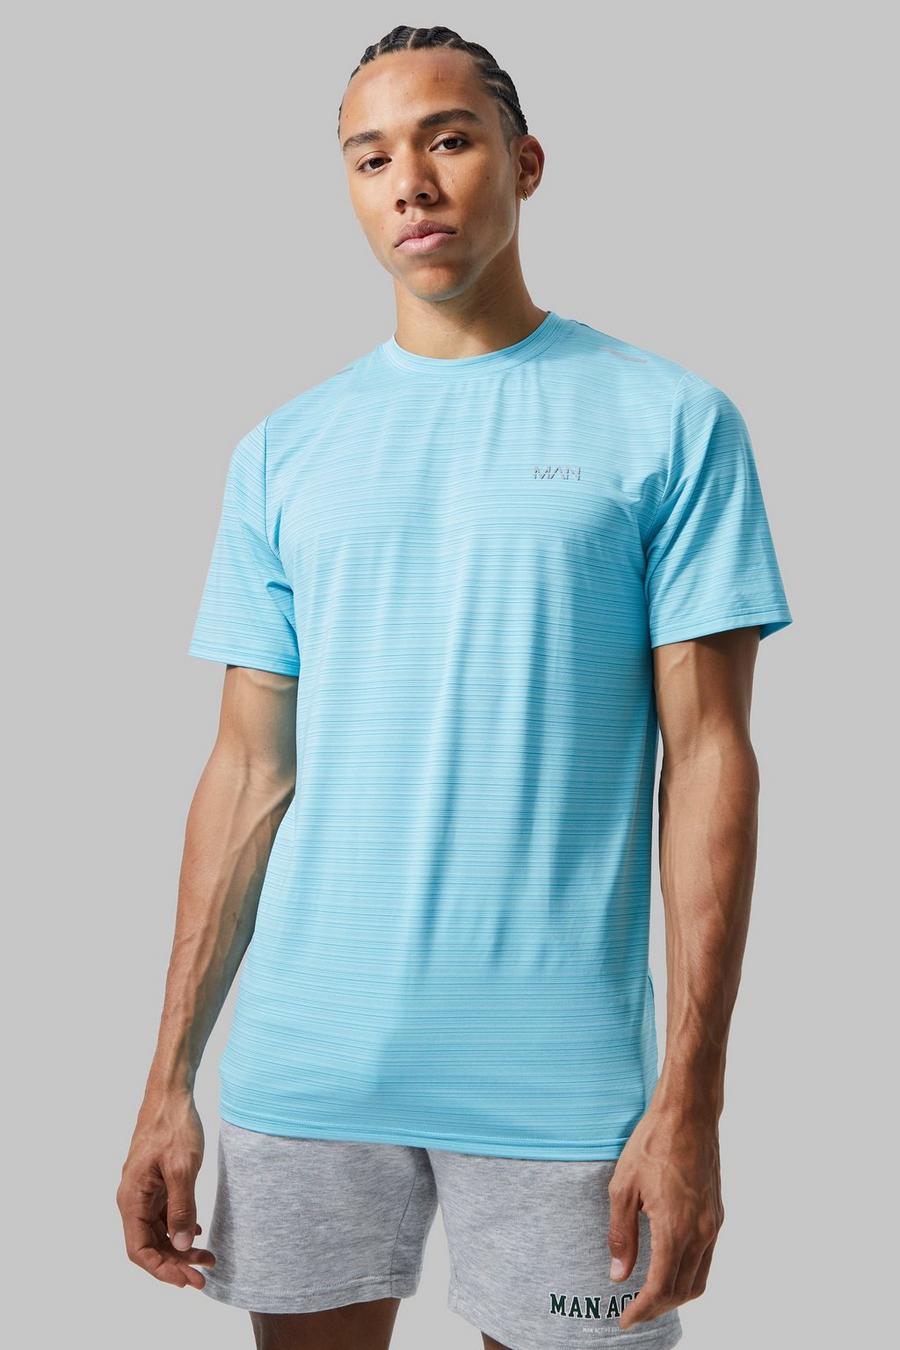 Light blue Tall Man Active Lightweight Performance T-shirt  